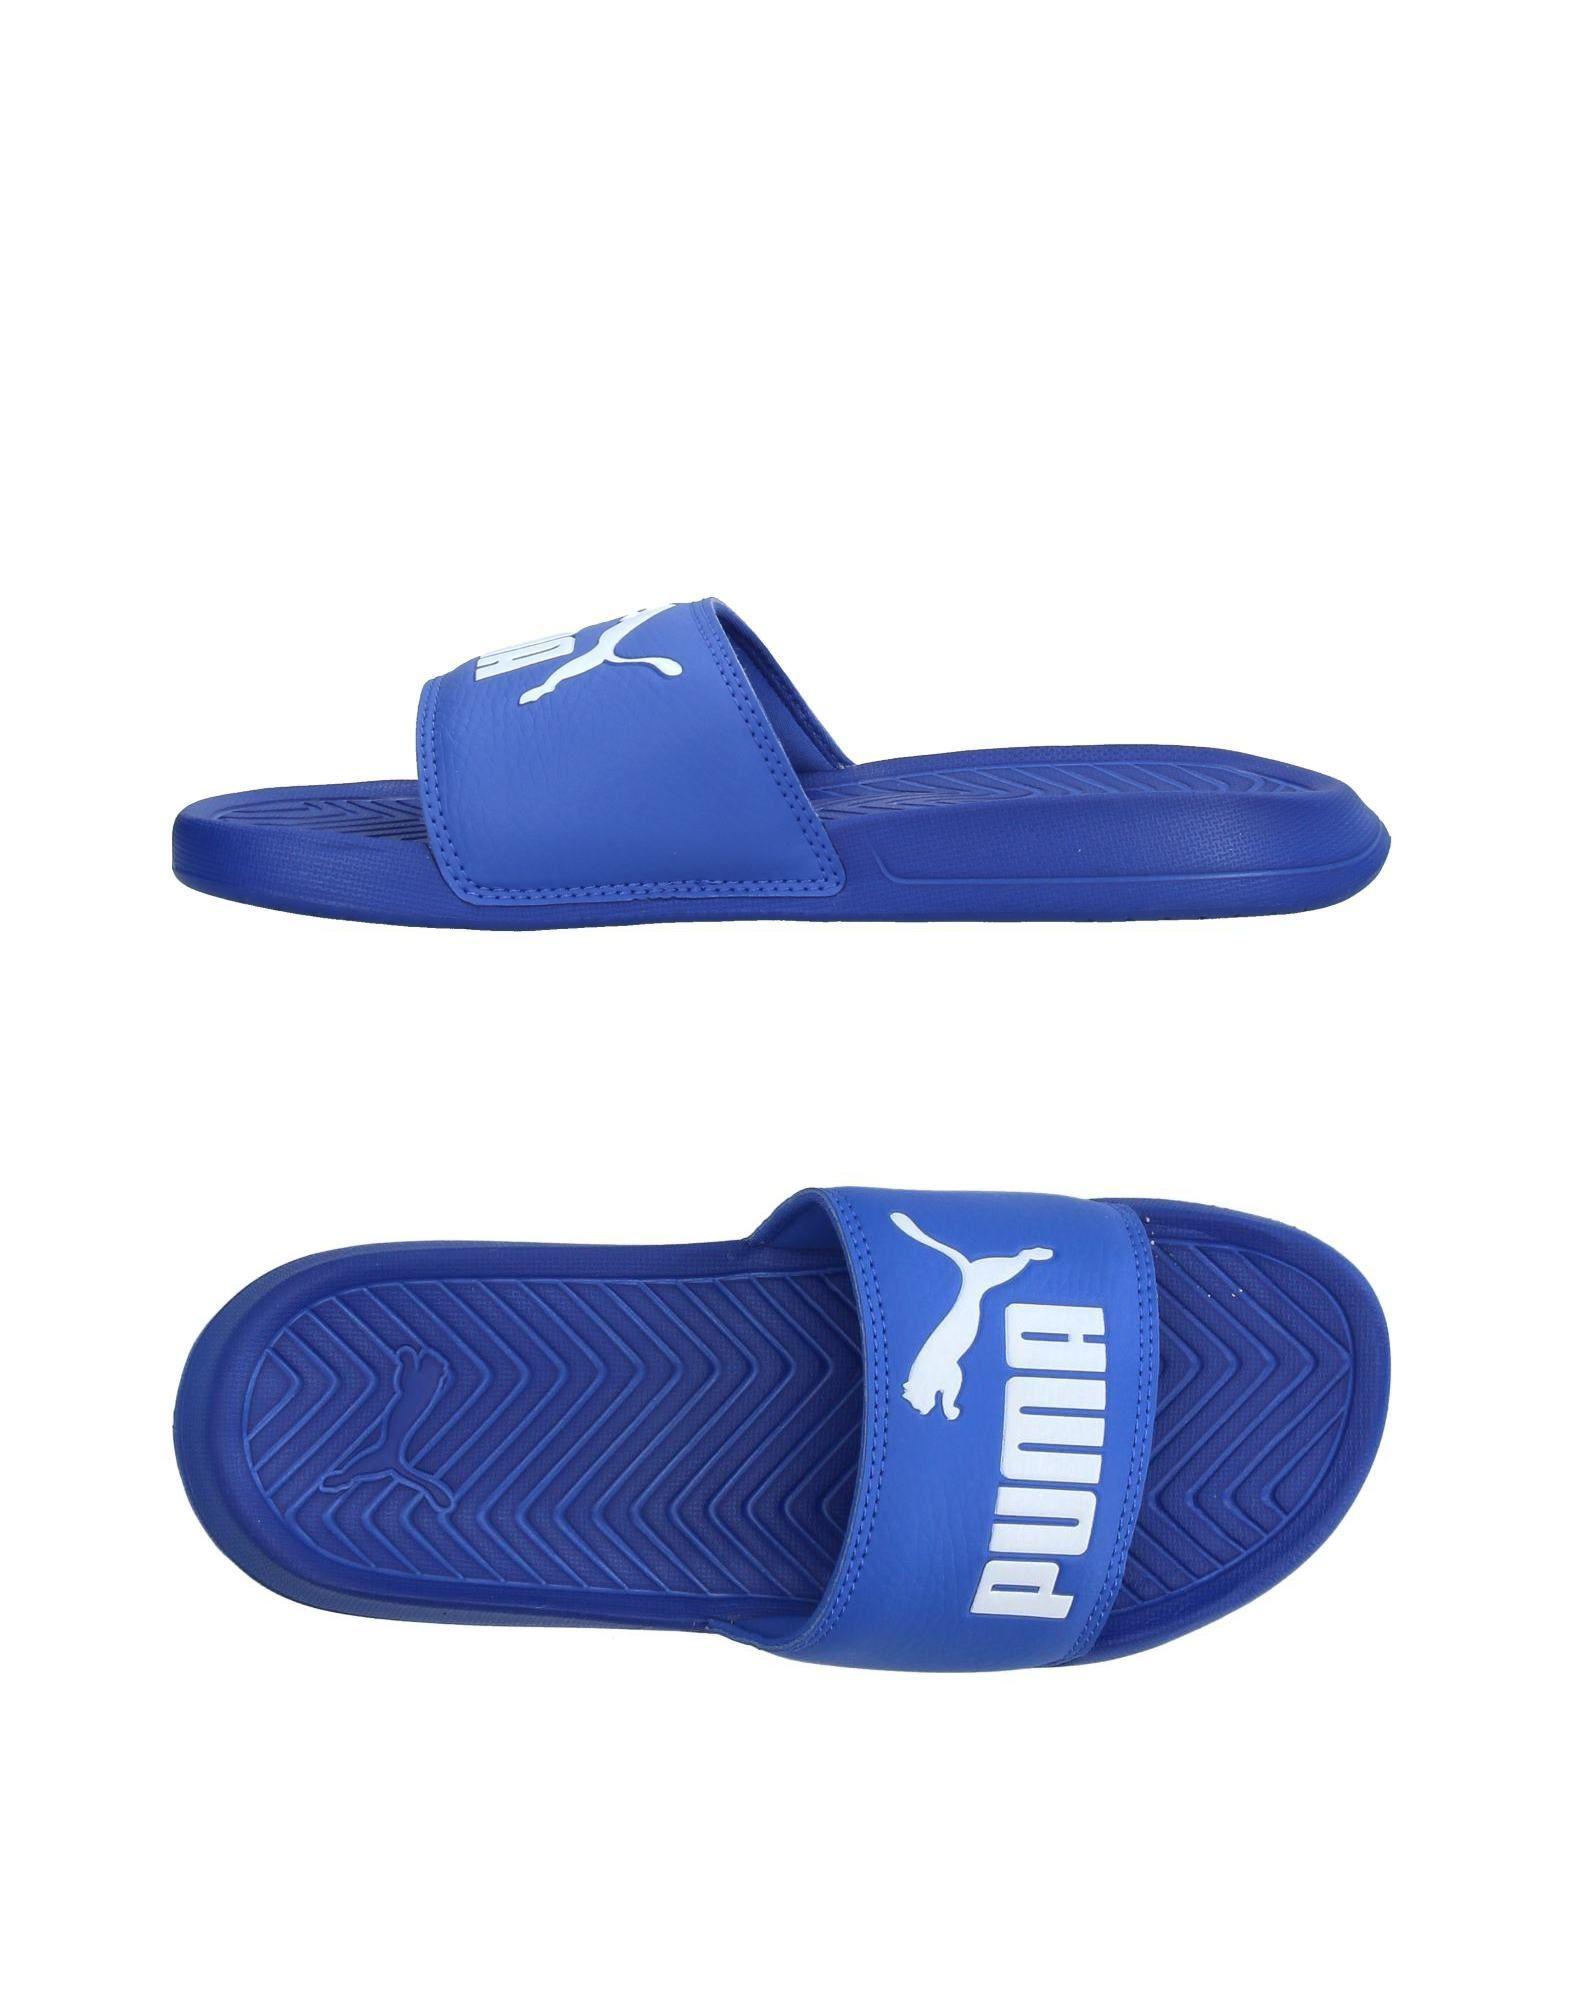 puma blue sandals online store 0a2e8 9394d